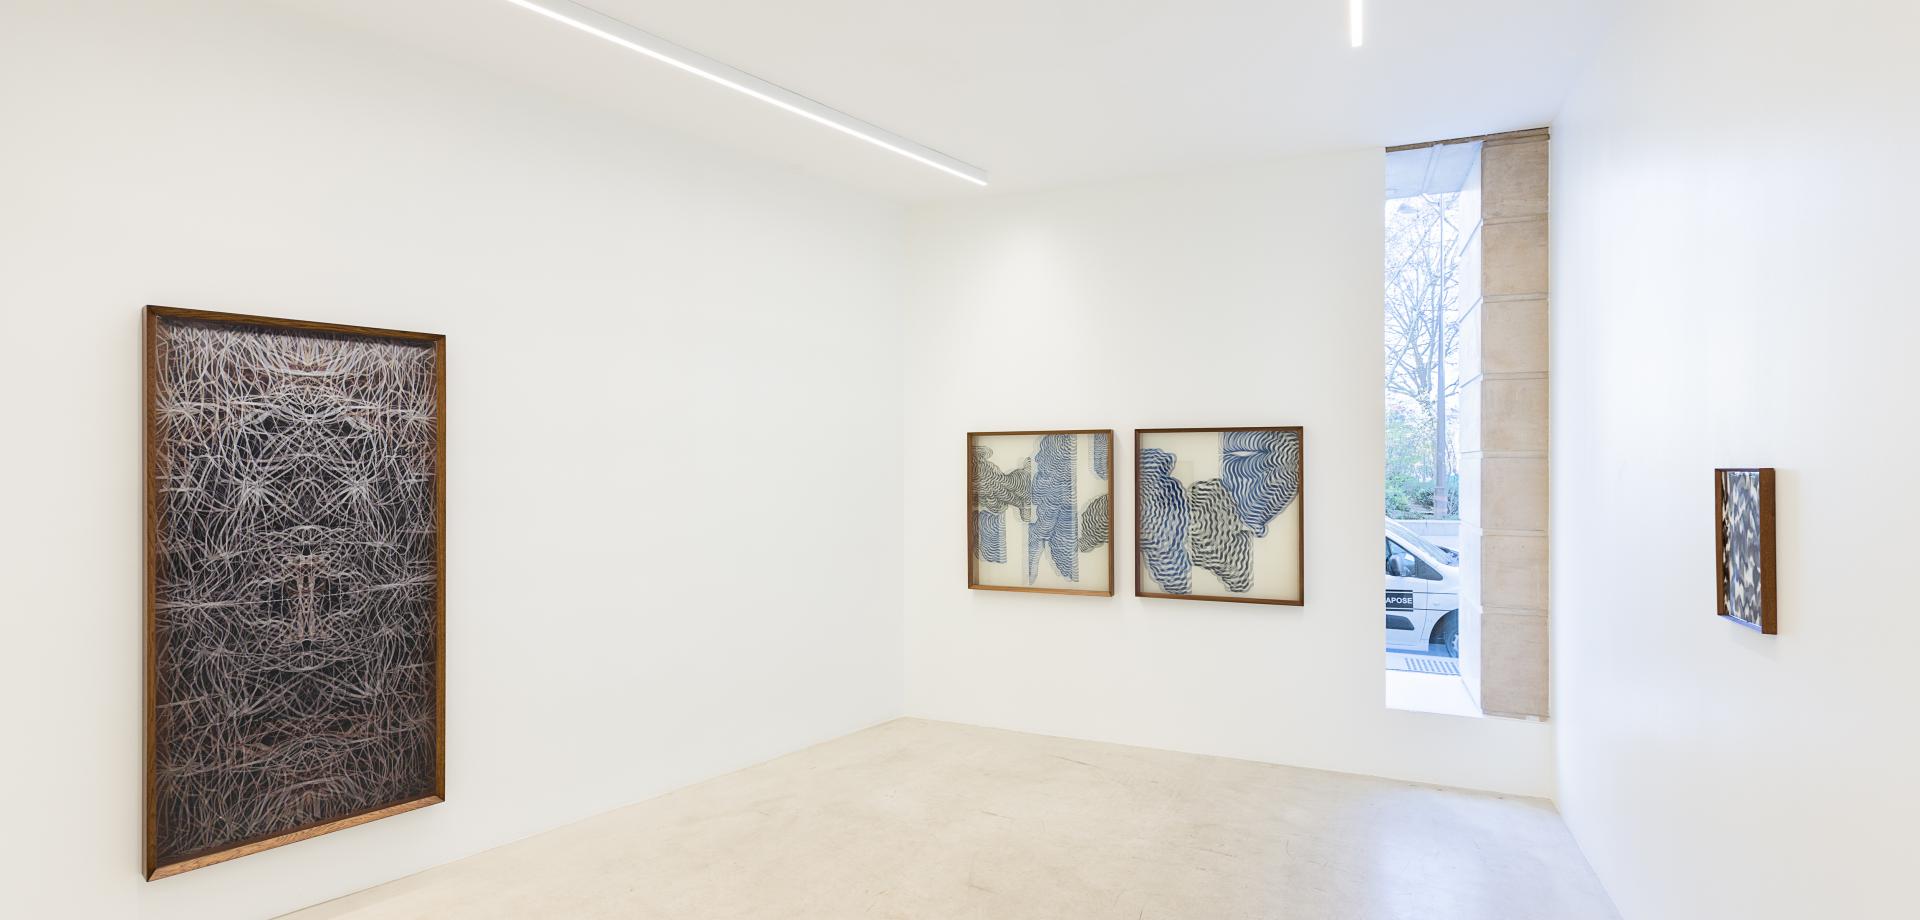 Salle 2, Maurizio Donzelli, Galerie Italienne